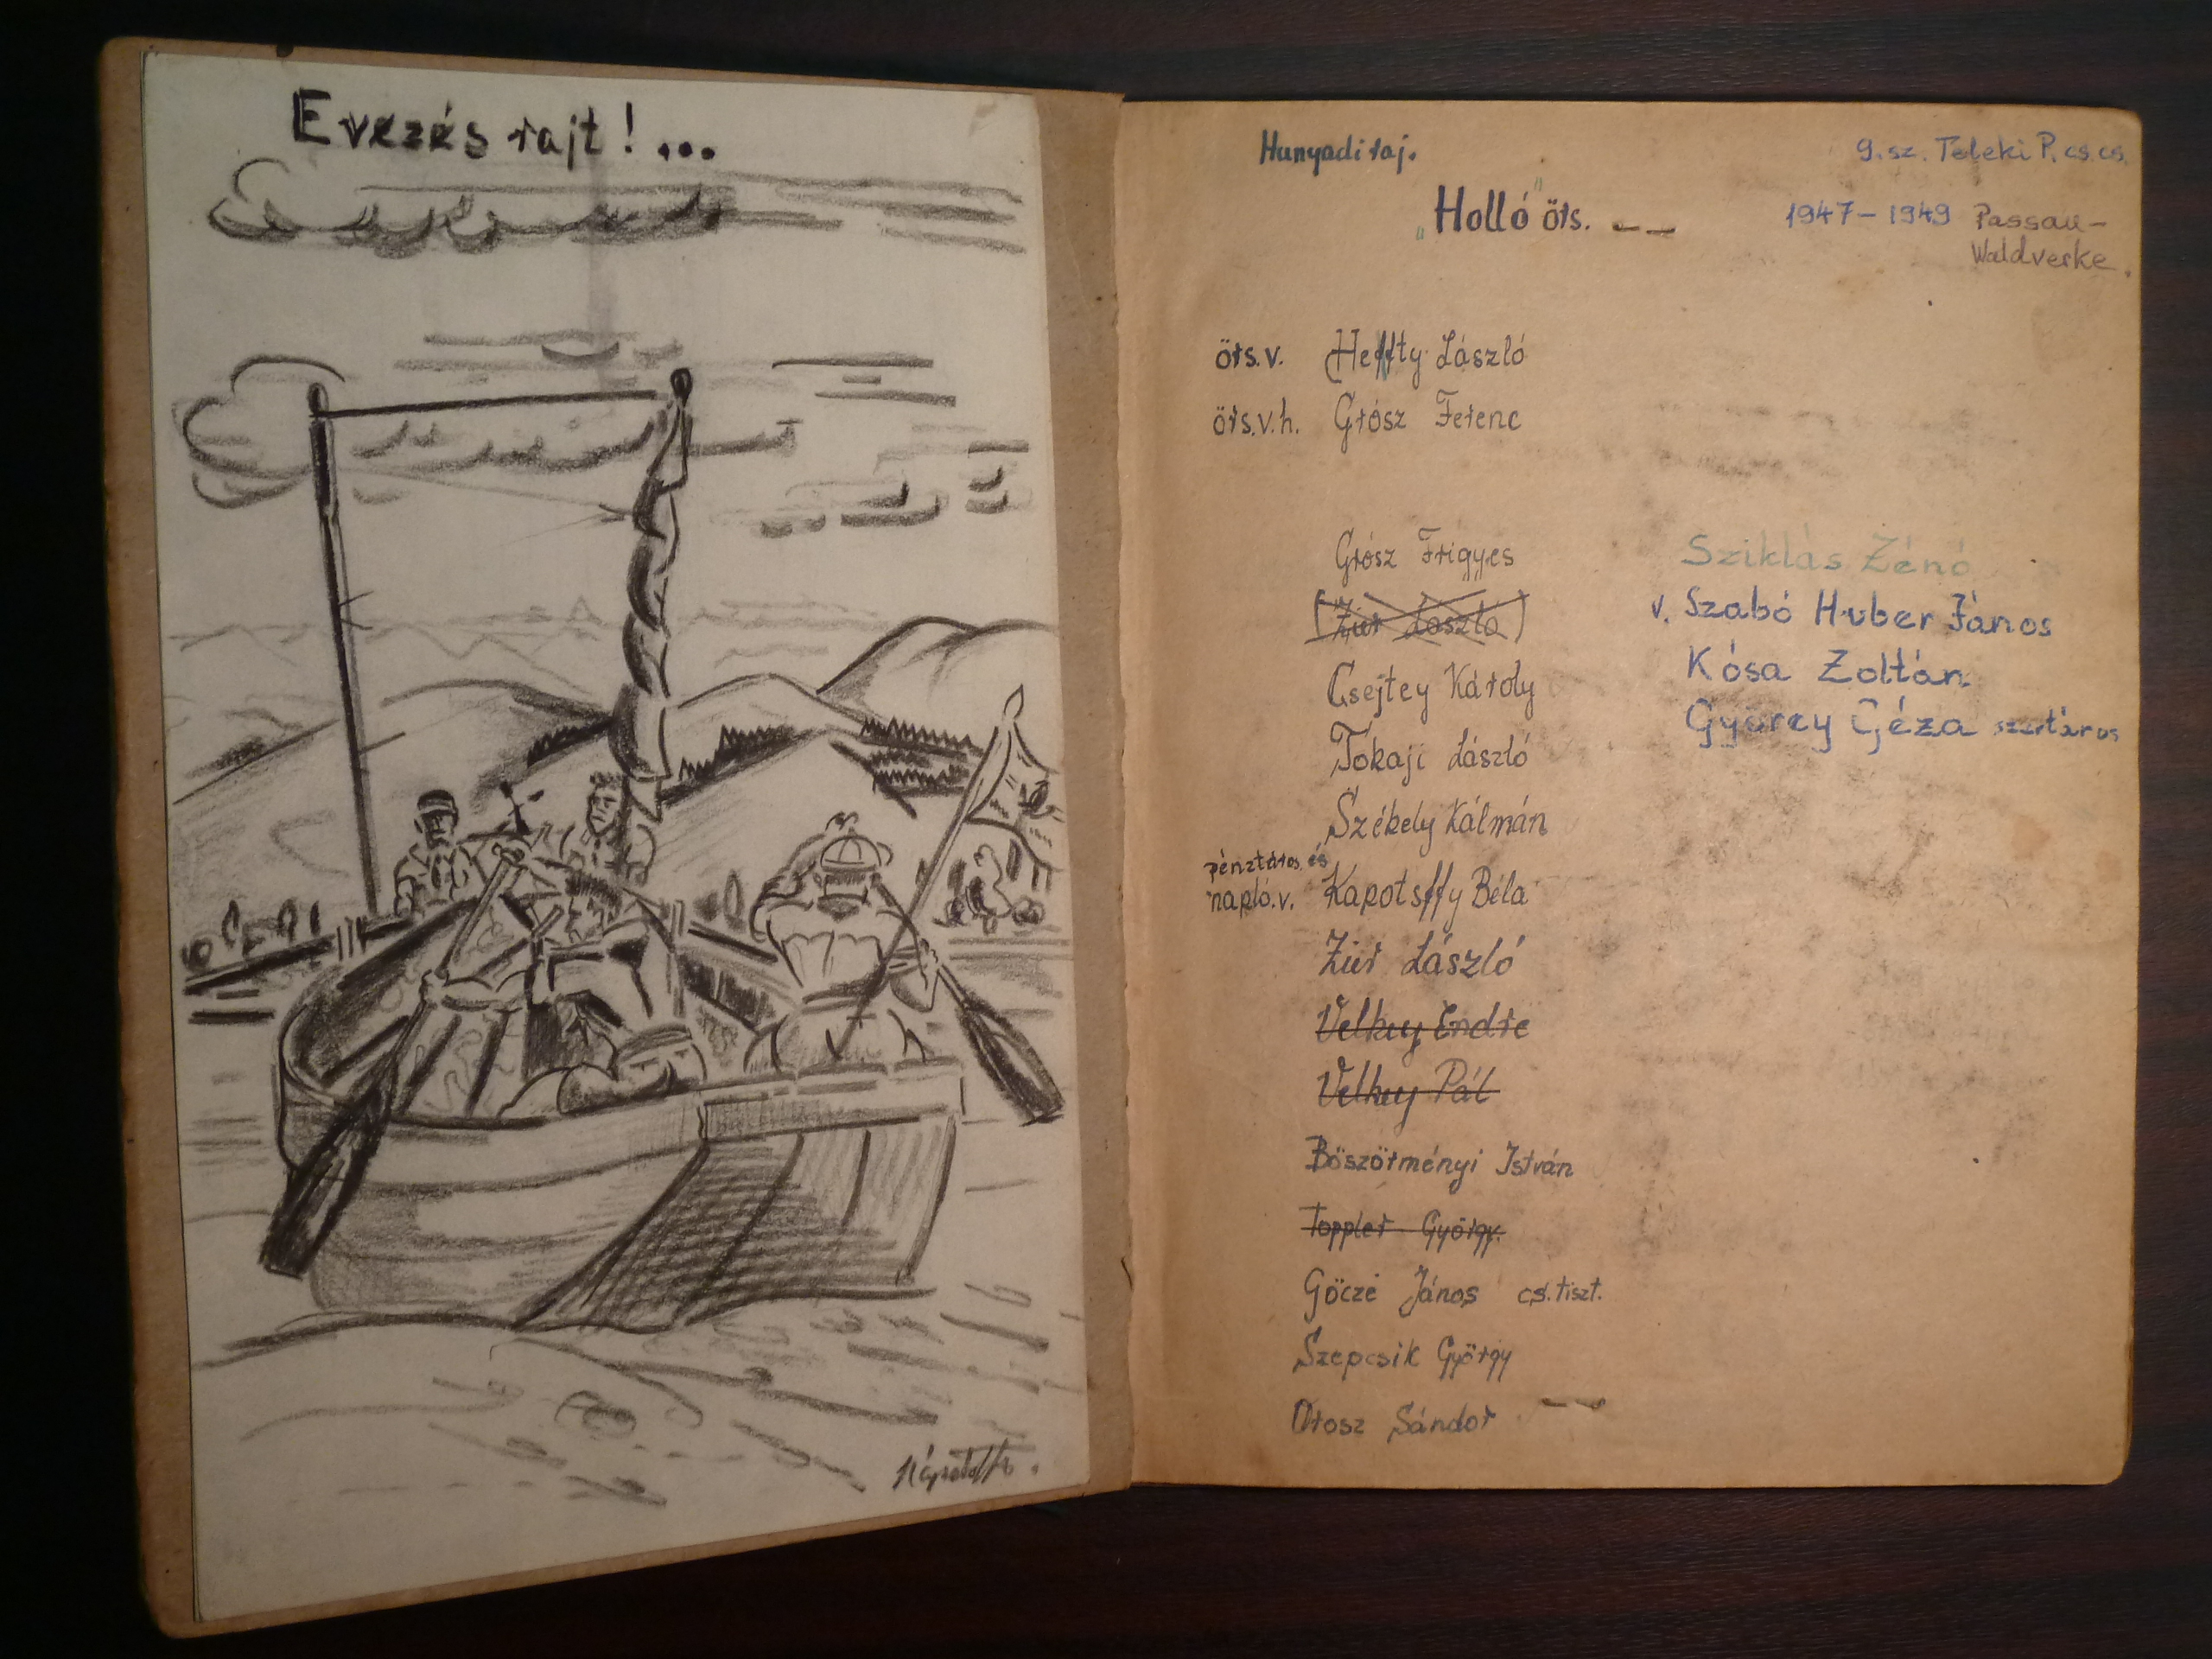 A 'Holló' őrs naplója - emigráns magyar vízi cserkészet, 1947-49, Passau, Németország